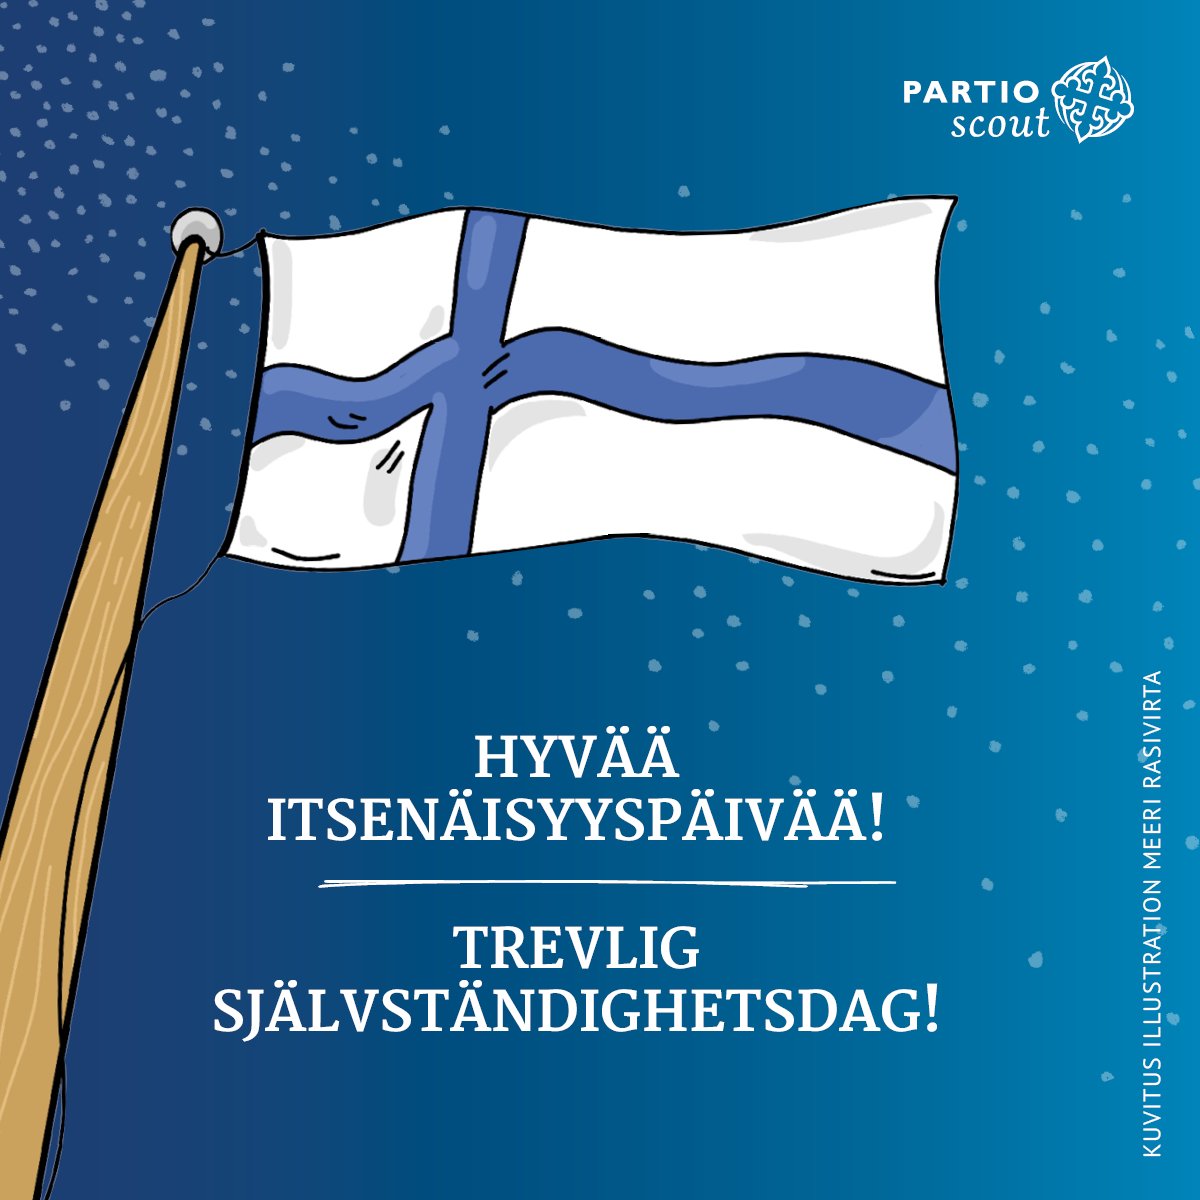 Hyvää itsenäisyyspäivää!
#Suomi106 #🇫🇮

#ilmapartio #päpa #partioscout